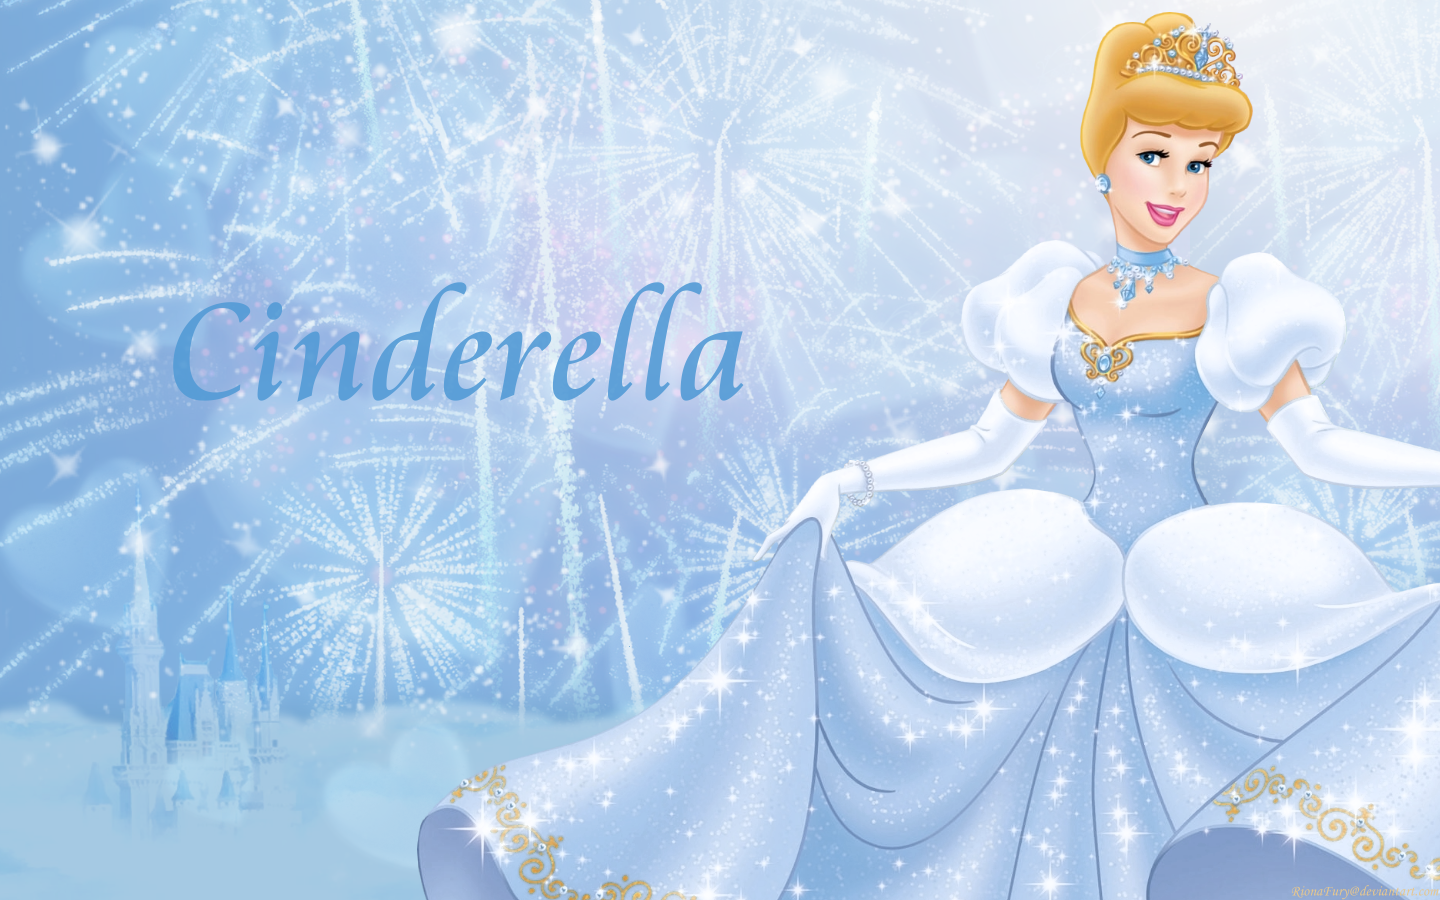 75+] Cinderella Wallpaper - WallpaperSafari